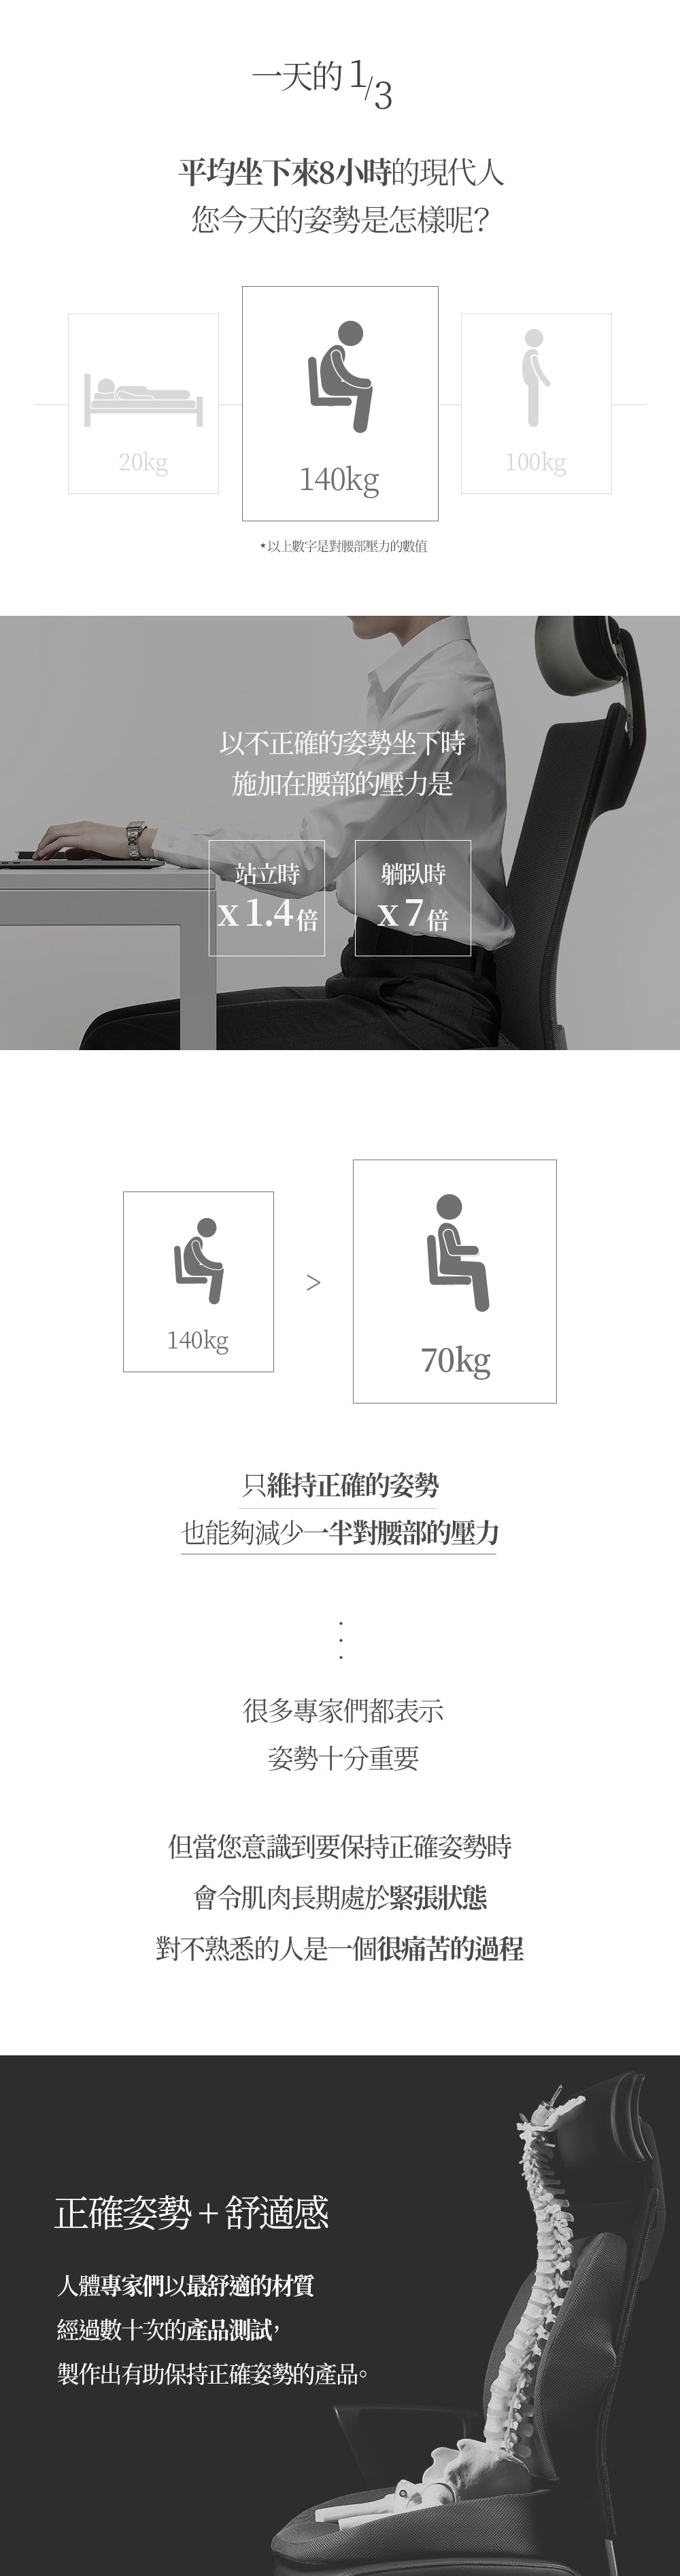 辦公椅護腰墊推薦-坐姿影響健康-人體工學特殊設計-幫助矯正坐姿-可減輕接觸面及尾椎的壓力